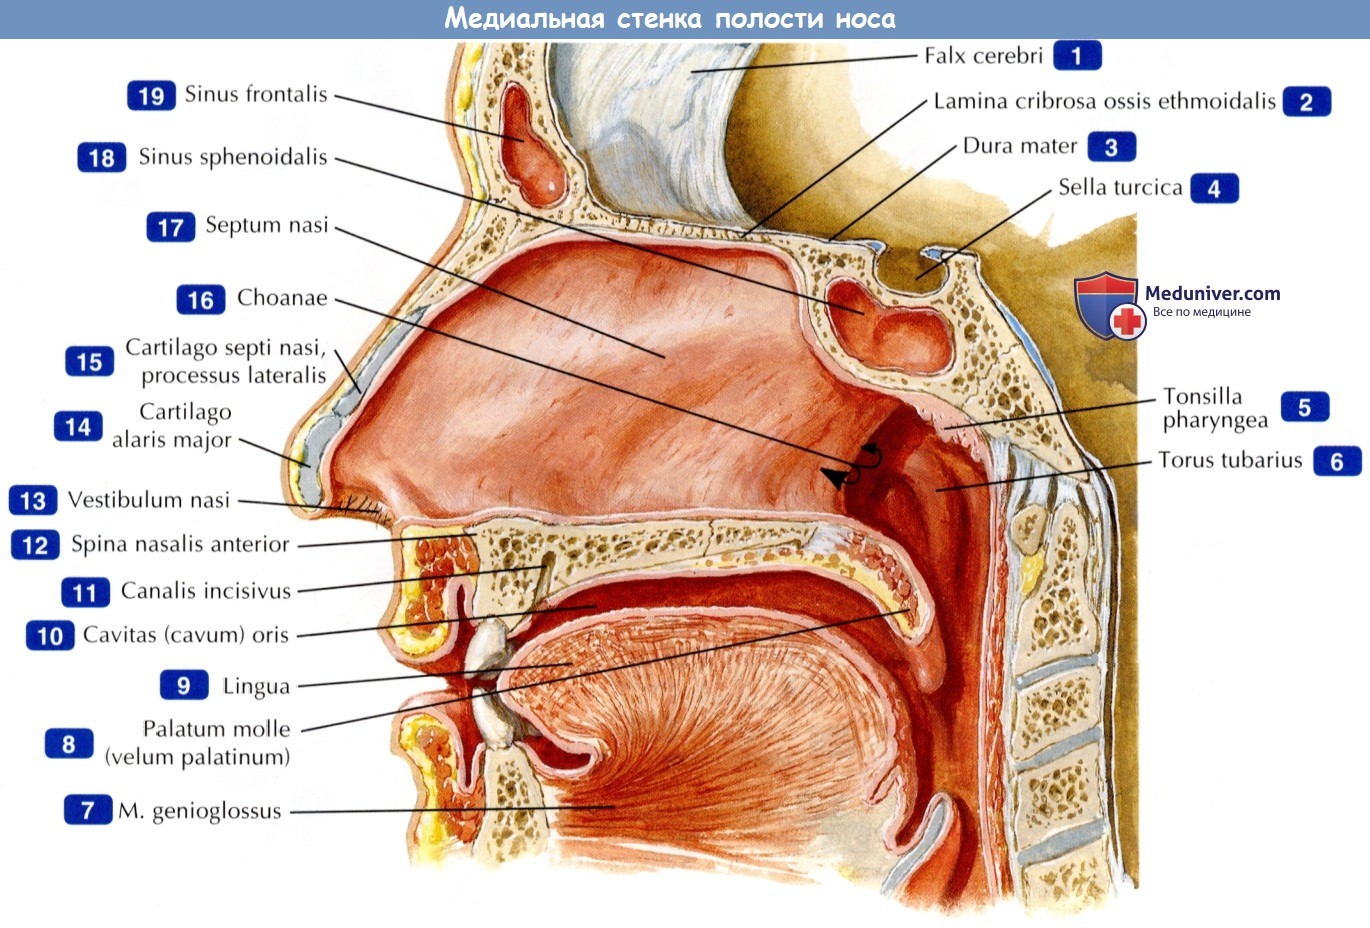 Медиальная стенка полости носа - по атласу анатомии